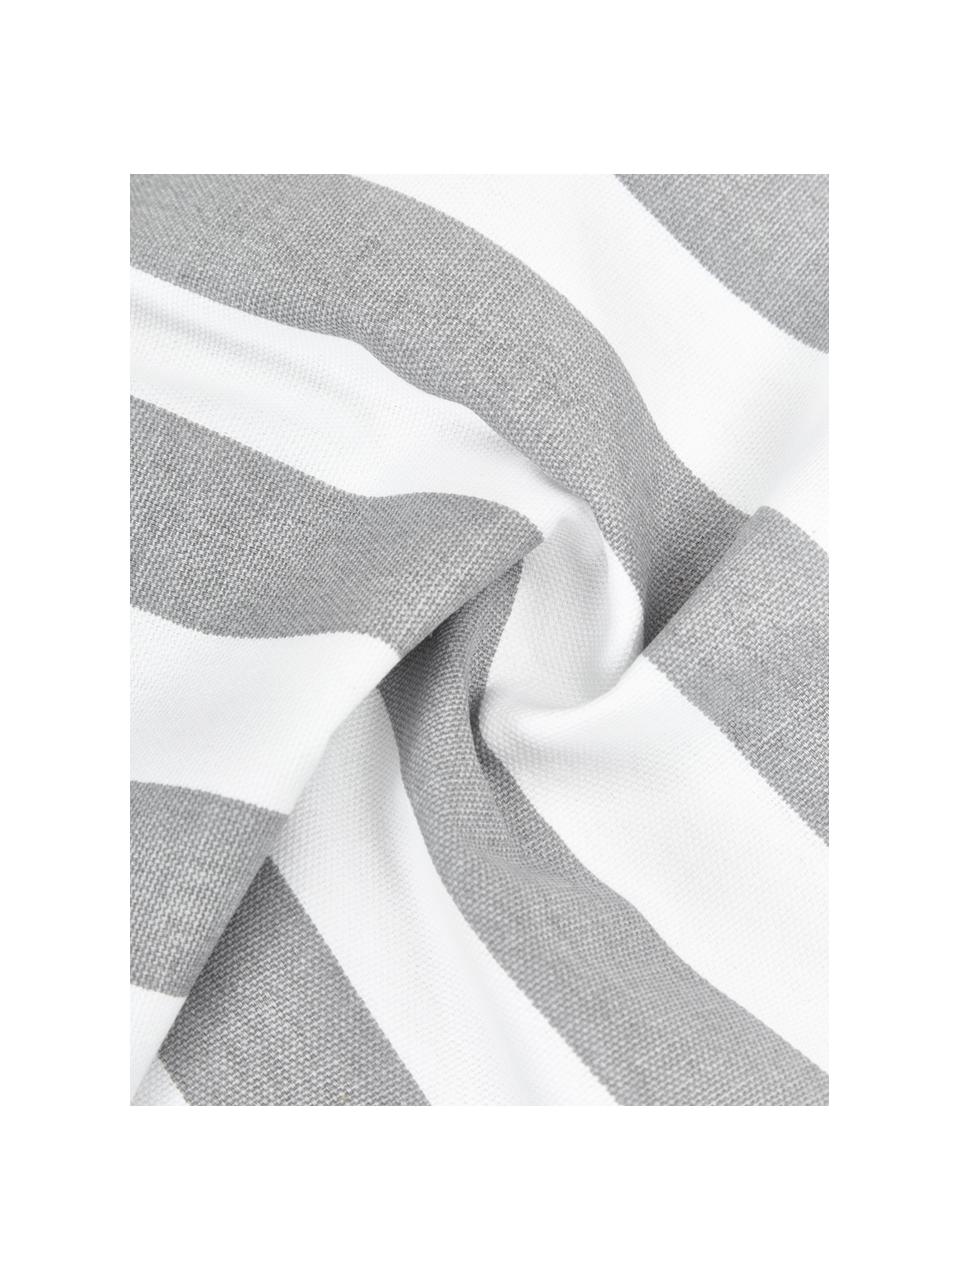 Gestreifte Kissenhülle Timon in Grau/Weiß, 100% Baumwolle, Hellgrau, Weiß, B 50 x L 50 cm